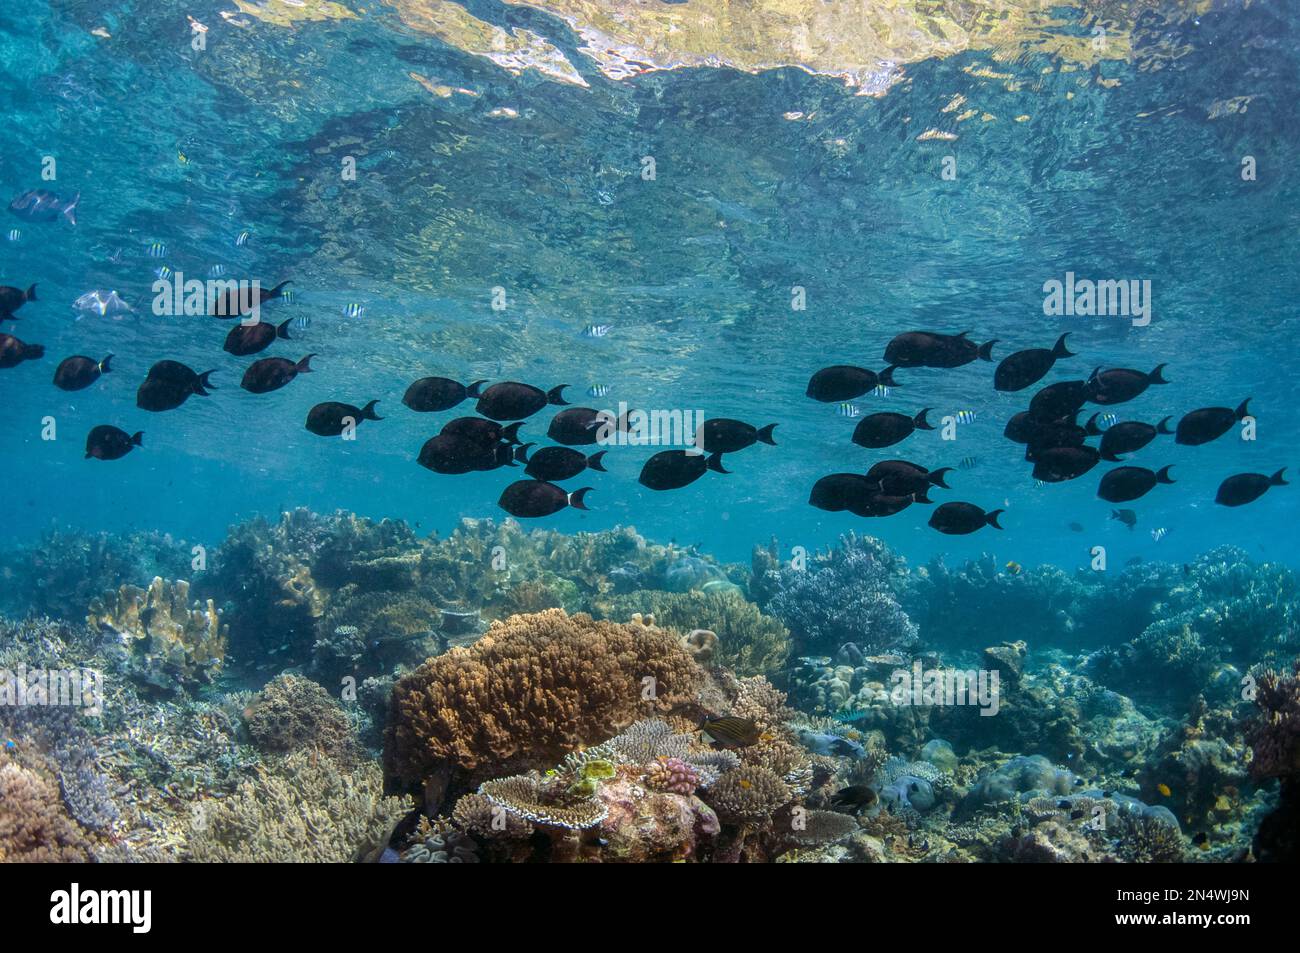 School of Ringtail Surgeonfish, Acanthurus blochii, Cape Kri dive site, Dampier Strait, Raja Ampat, Indonesia Stock Photo